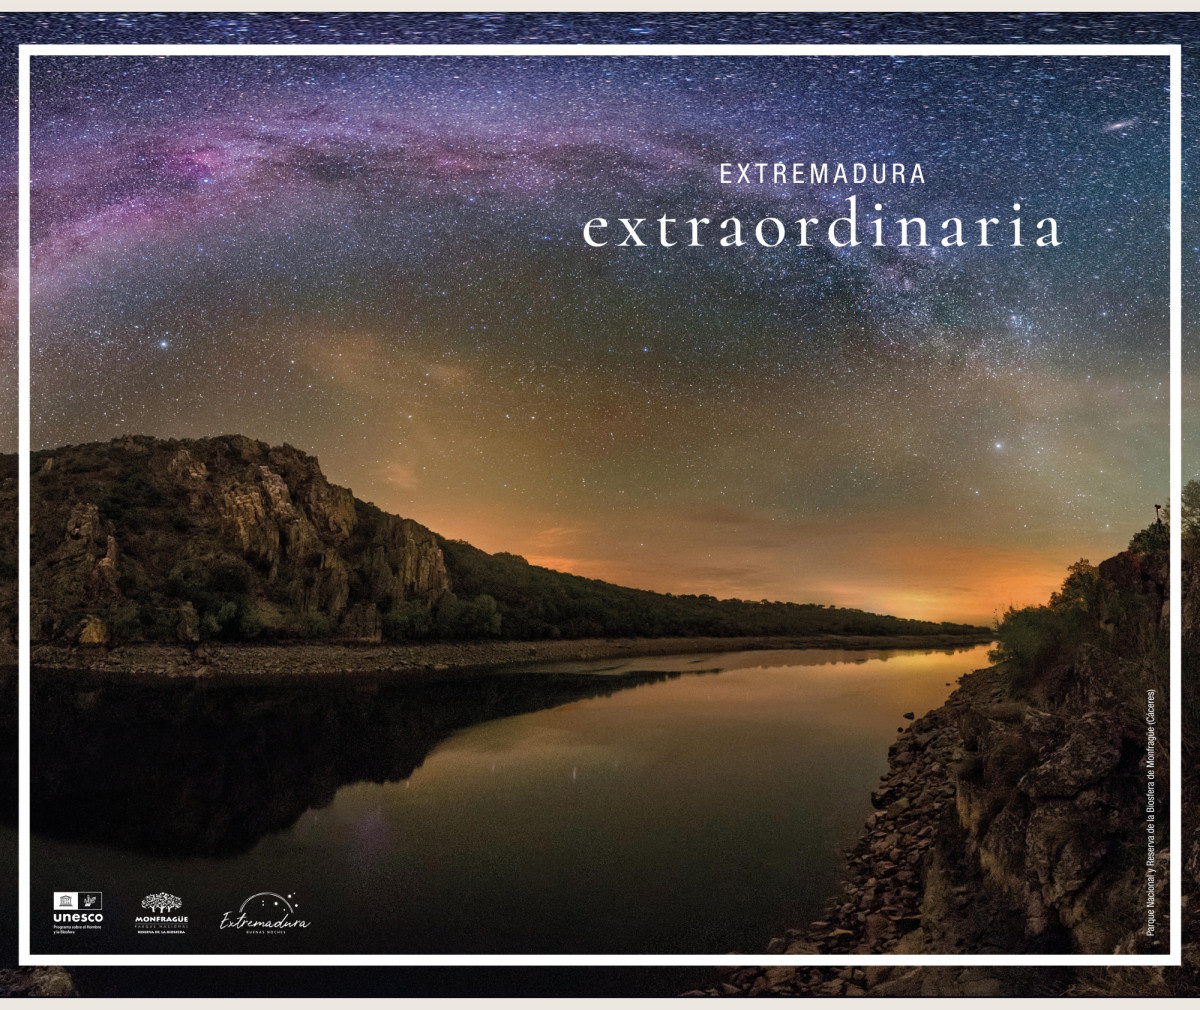 Un viaje para descubrir todo lo que hace a Extremadura extraordinaria